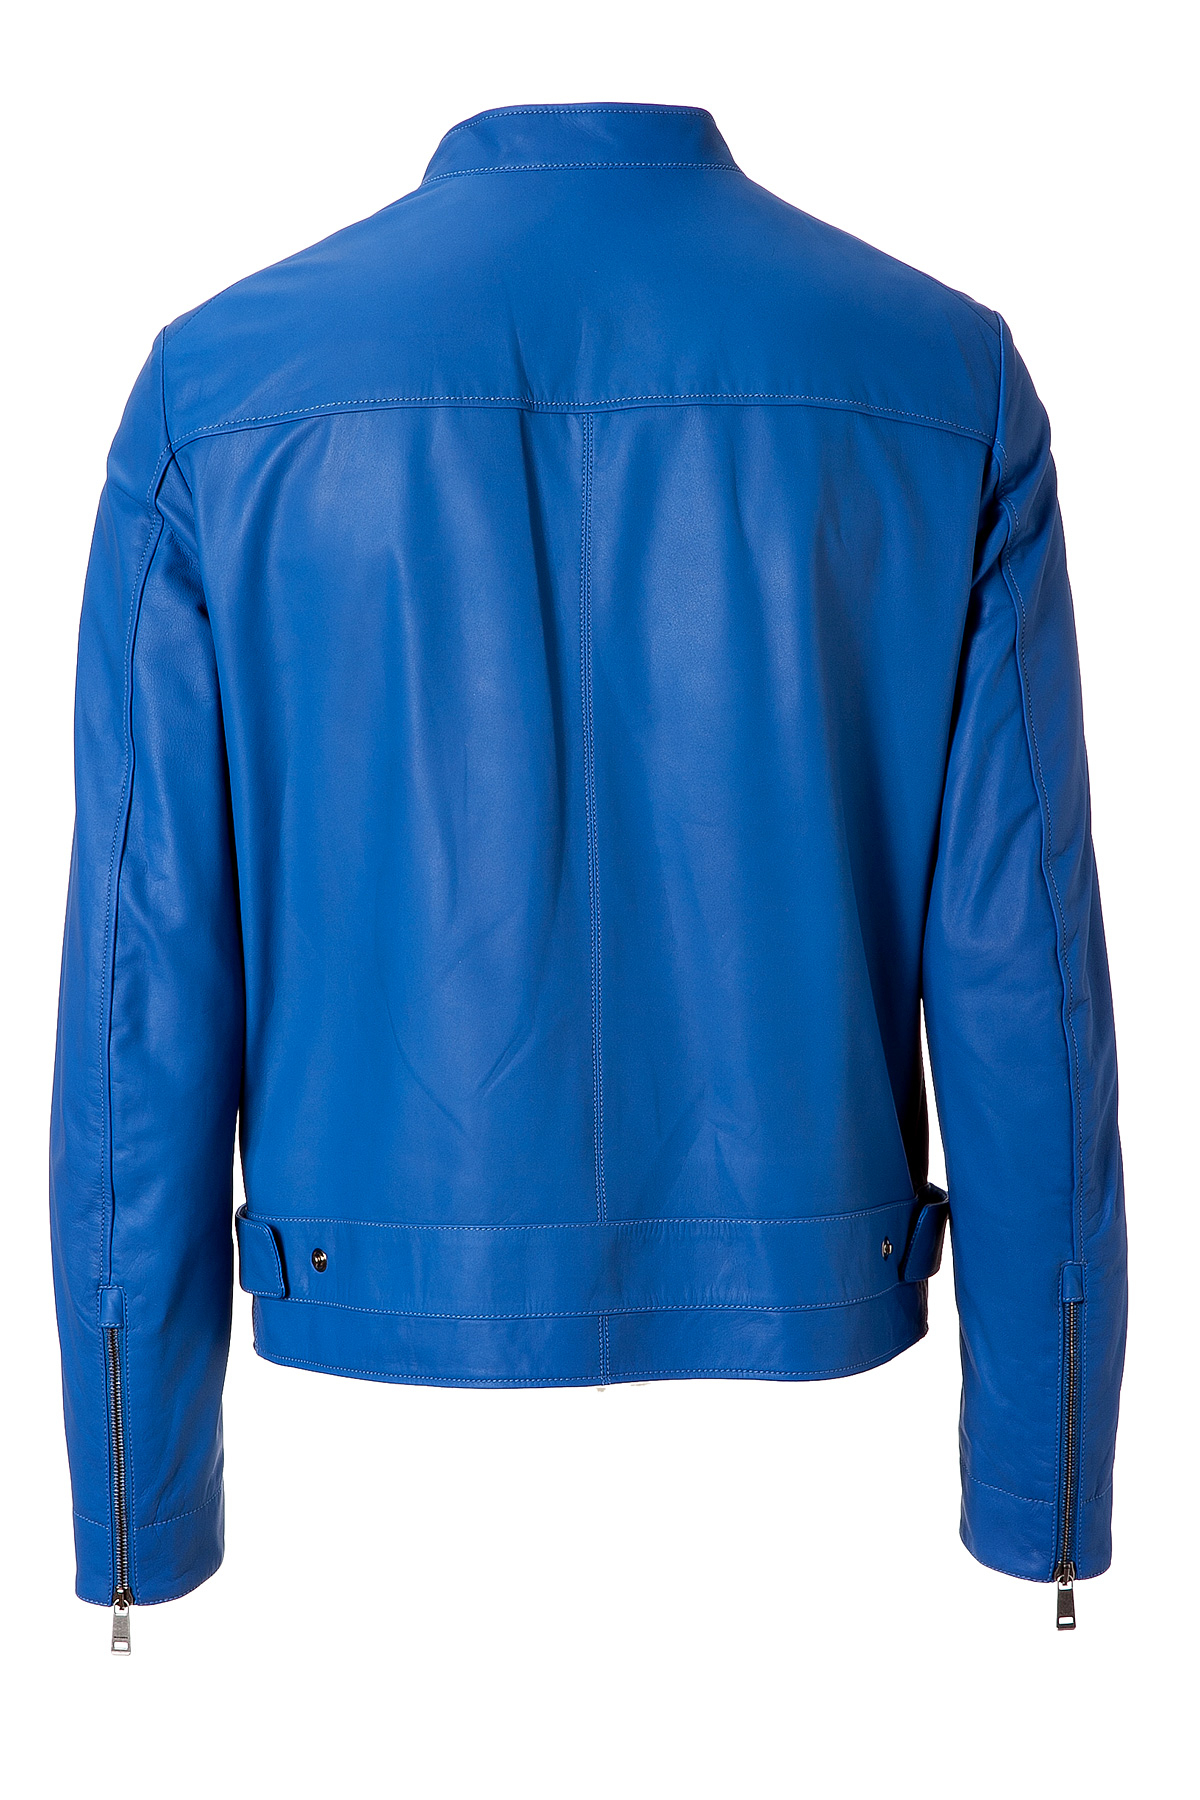 Lyst - Jil sander Royal Blue Leather Jacket in Blue for Men